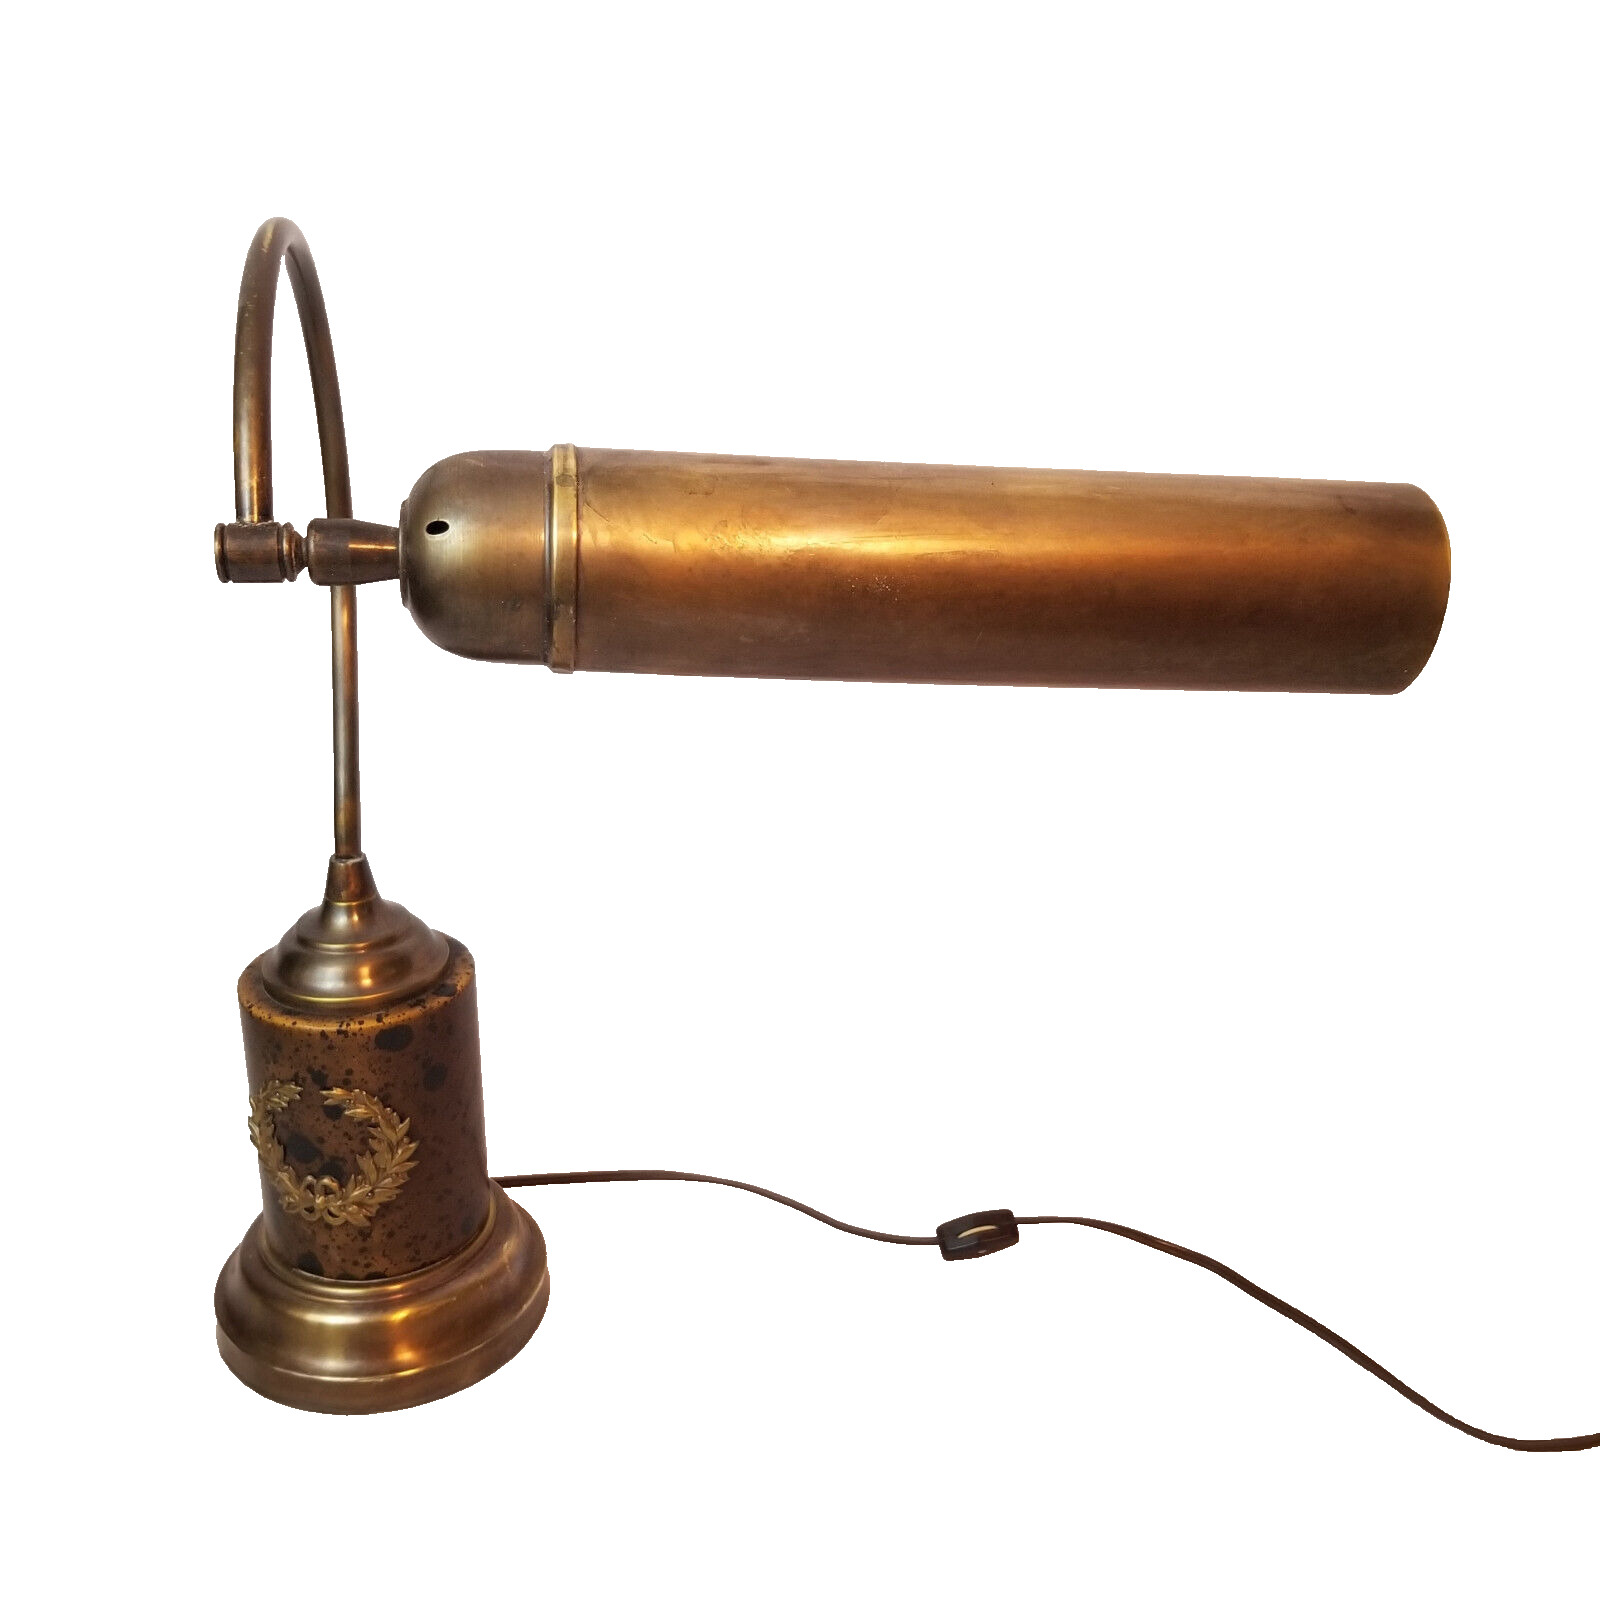 Rare Vintage Bronze Gooseneck Bank Teller Library Desk Study Lamp Laurel Leaf